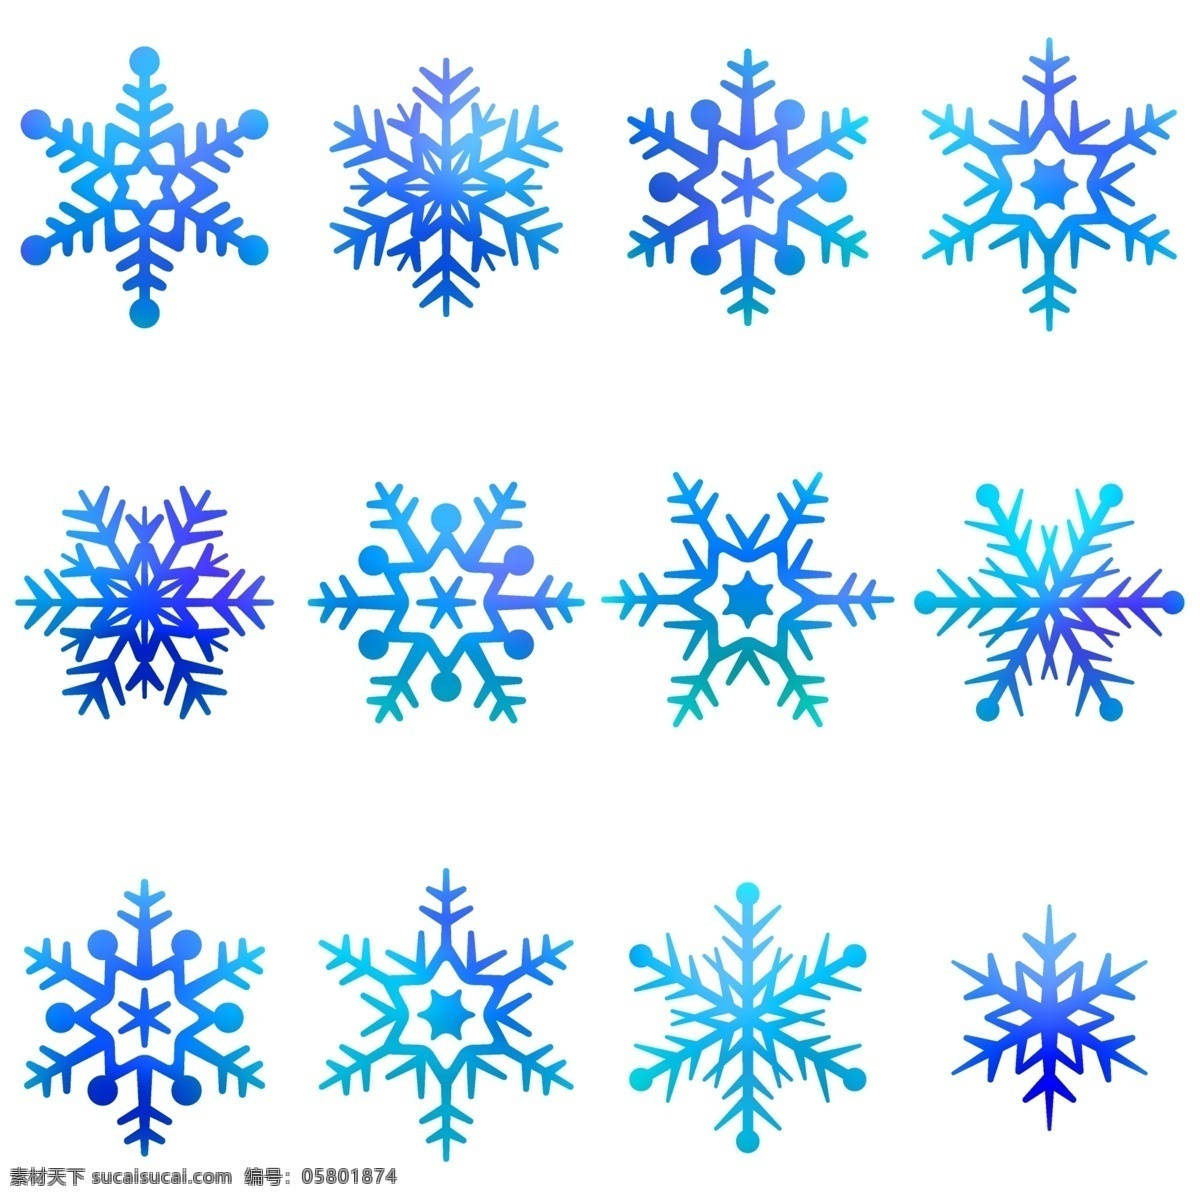 创意雪花插图 创意 雪花 插图 图标 雪花图案 标志图标 其他图标